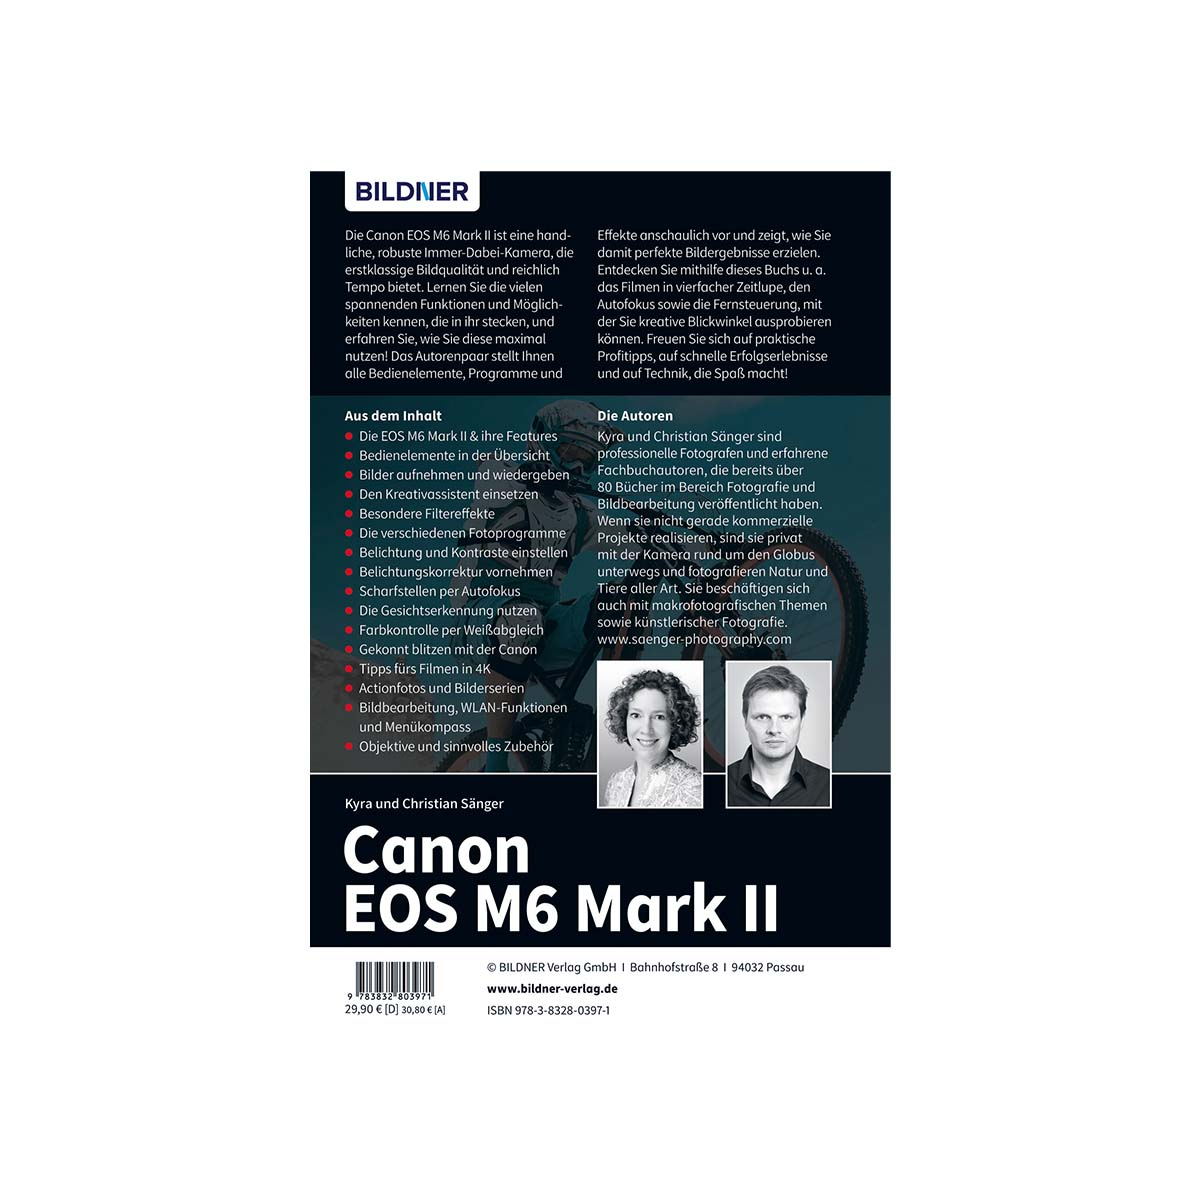 Canon EOS Ihrer Das Mark - zu M6 umfangreiche Kamera! 2 Praxisbuch